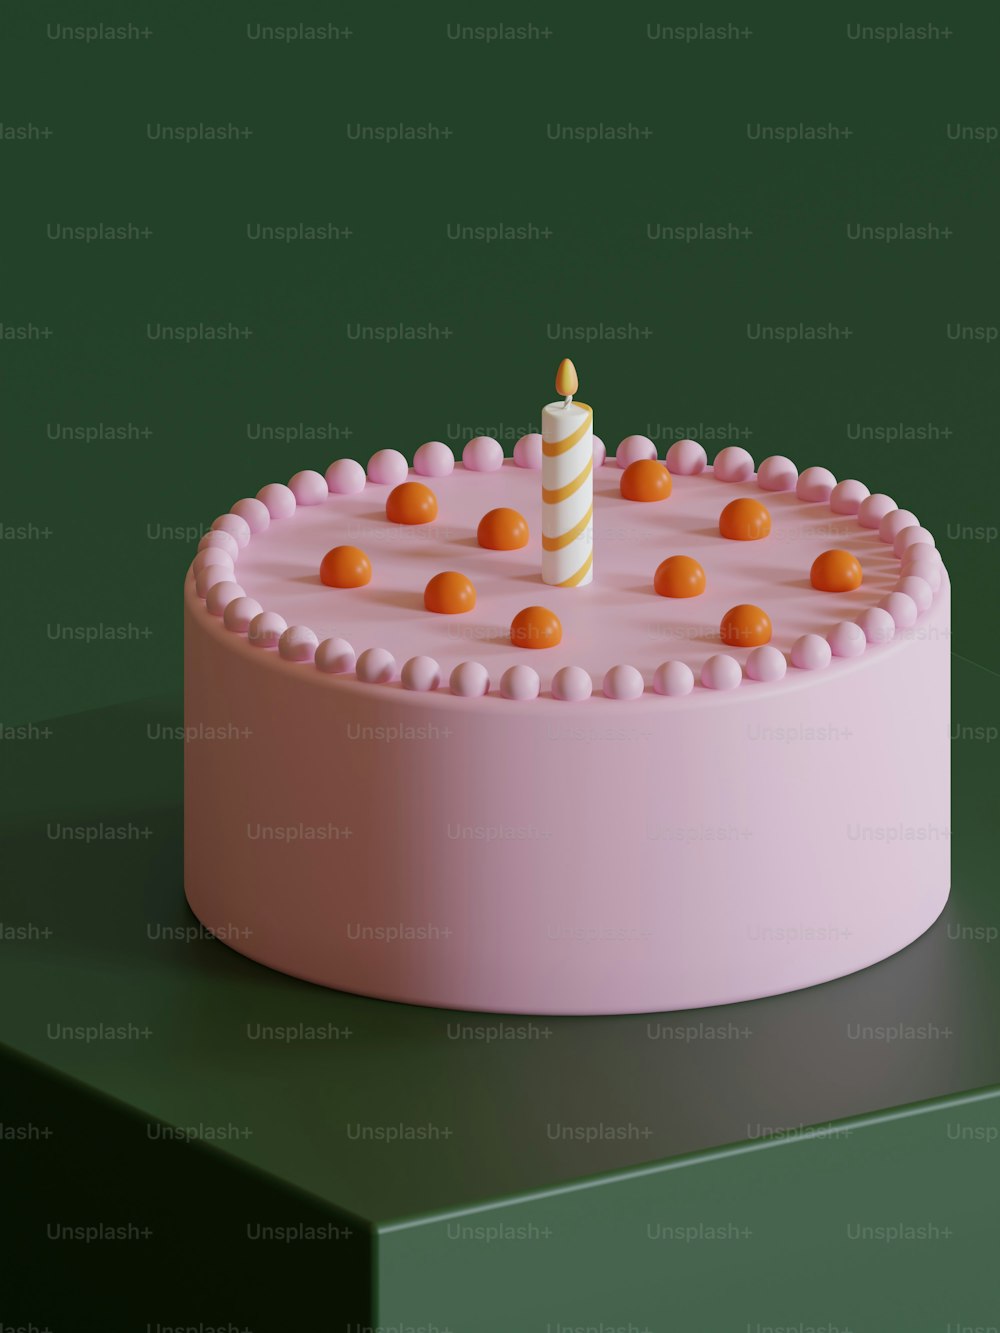 その上に1本のろうそくが付いたピンクのケーキ